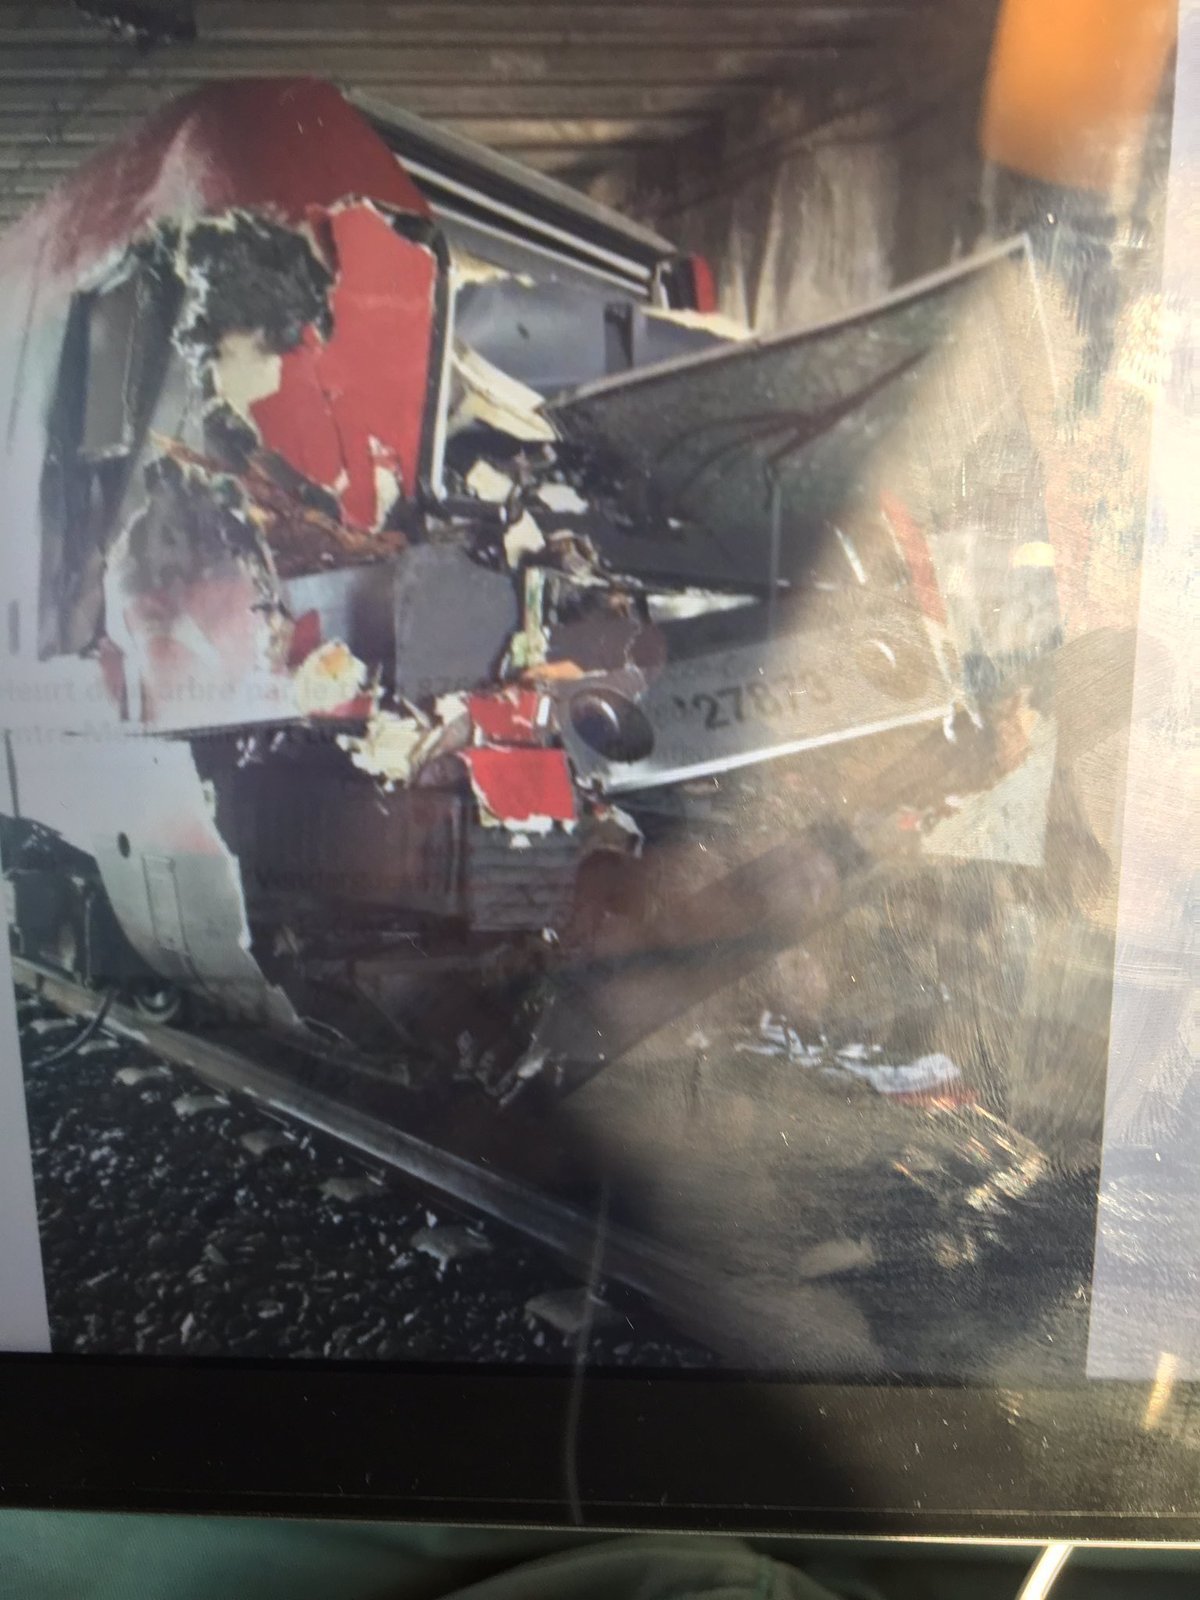 Σιδηροδρομικό ατύχημα στη νότια Γαλλία! Τουλάχιστον 60 σοβαρά τραυματίες – Συγκλονιστικές εικόνες μέσα από το τρένο